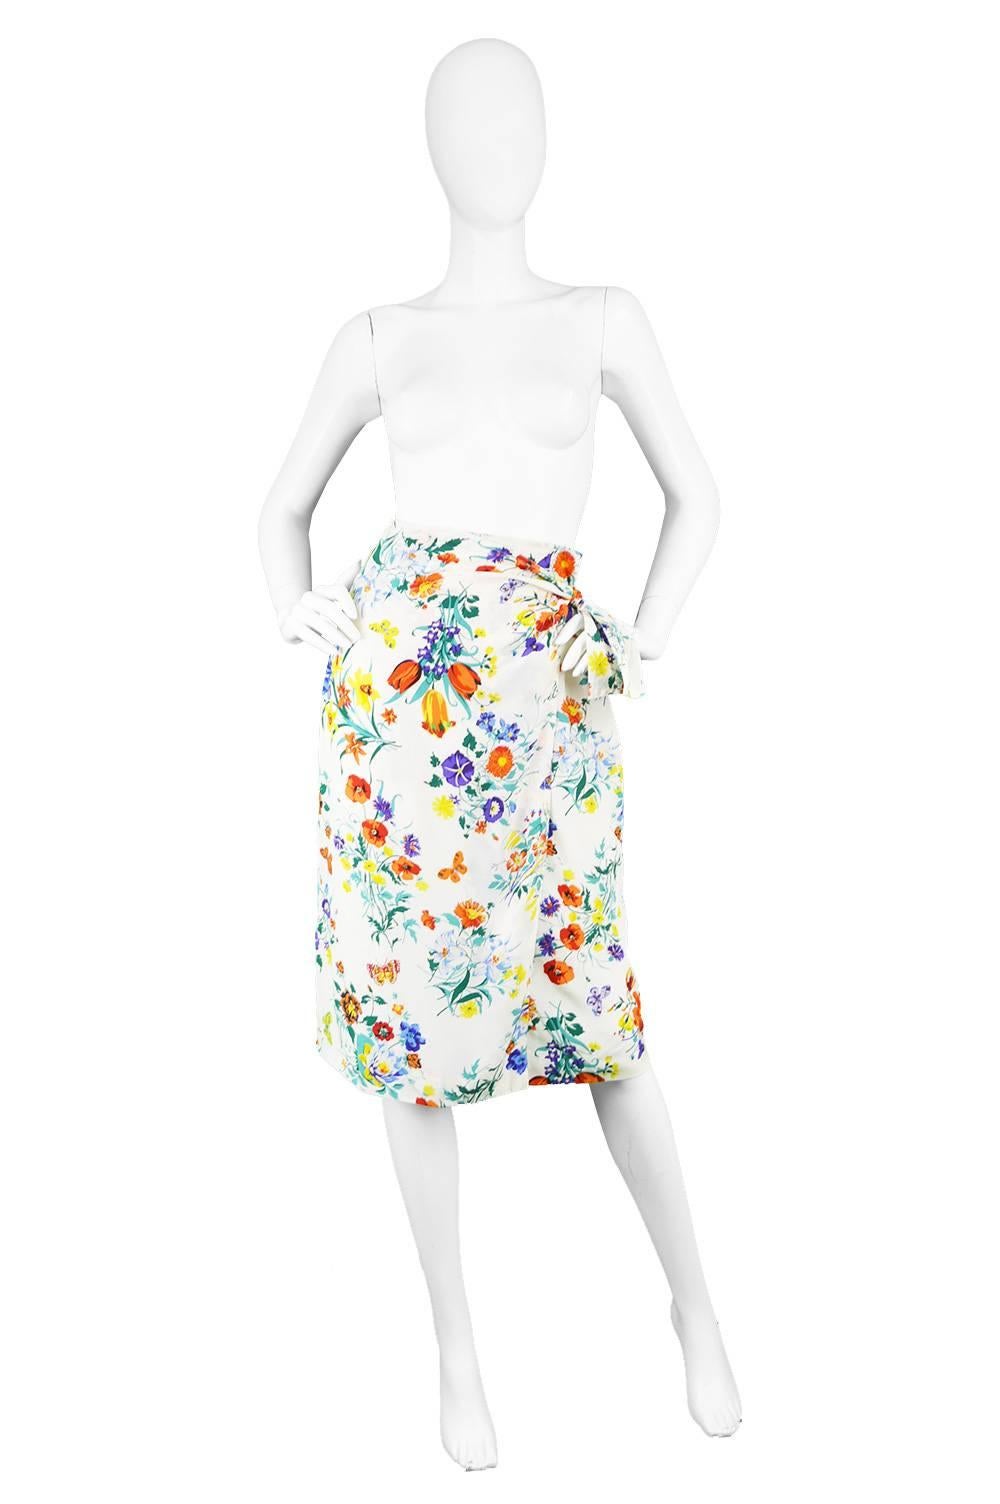 Gucci Vintage 1980s White Silk Floral Print Wrap Skirt

Estimated Size: UK 8/ US 4/ EU 38. Please check measurements.
Waist - 26” / 66cm
Hips - 38” / 96cm
Length (Waist to Hem) - 26” / 66cm

Condition: Excellent Vintage Condition - 1 small faint